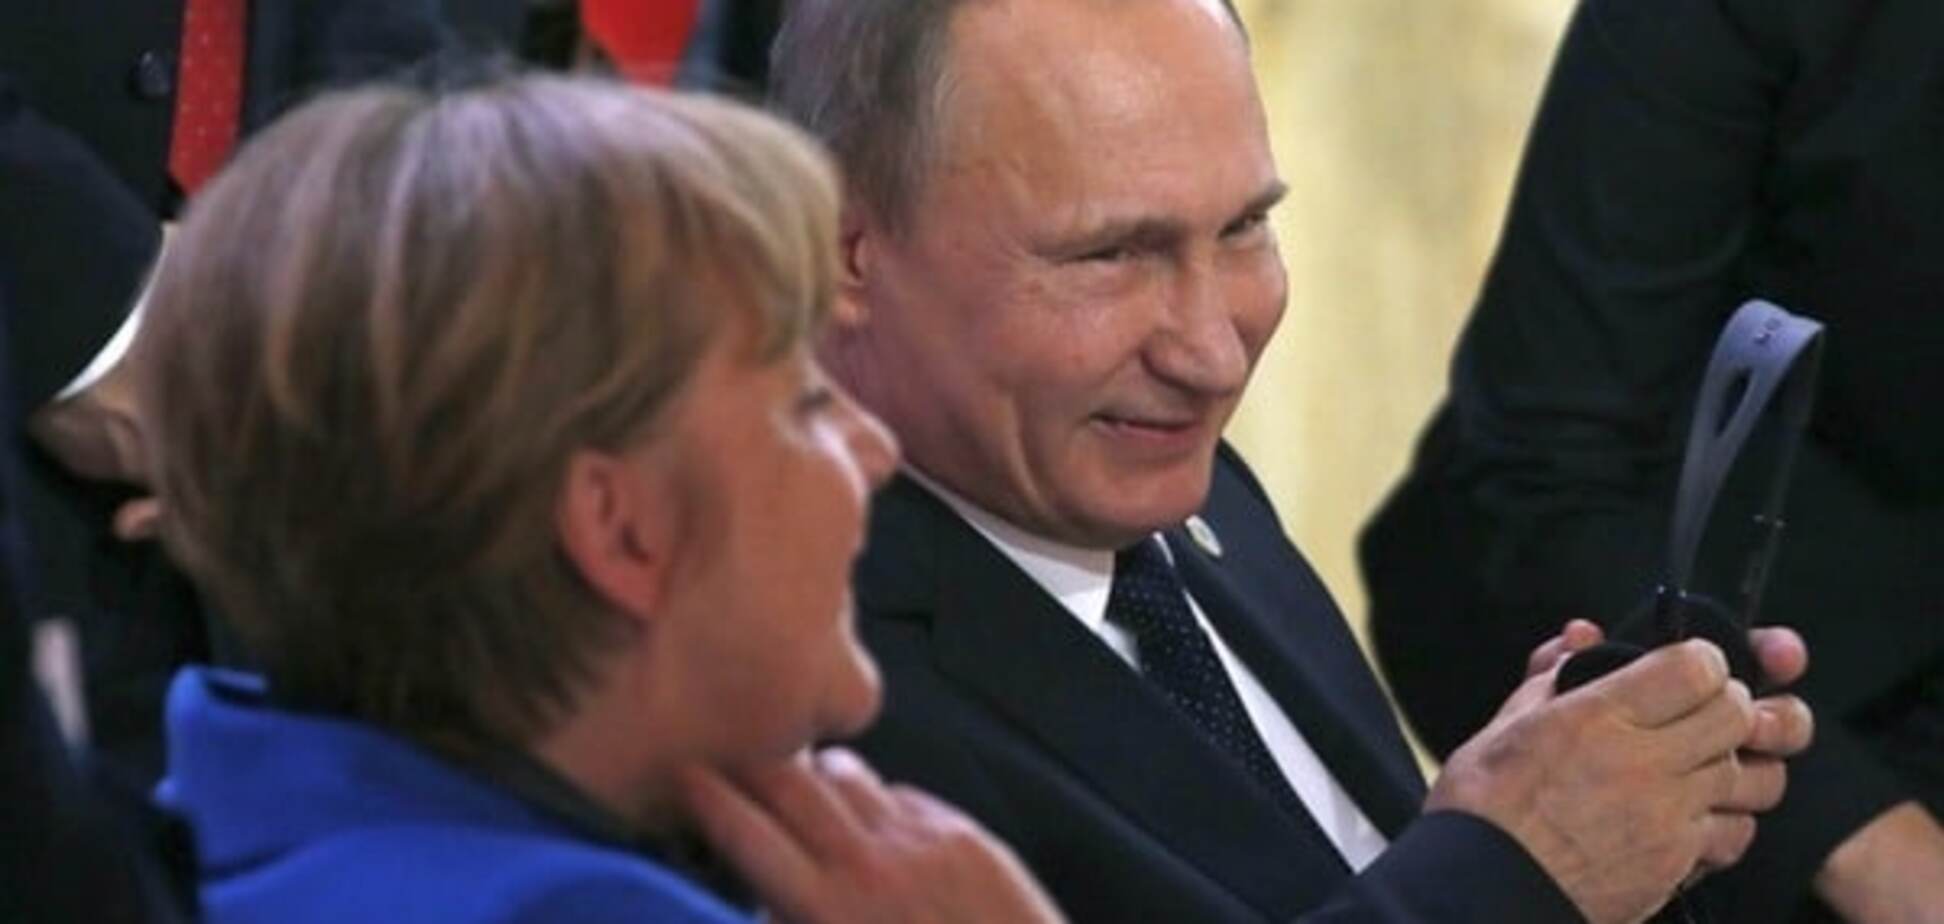 Пєсков підтвердив: Меркель приїхала до Путіна 'на обід' у Москву